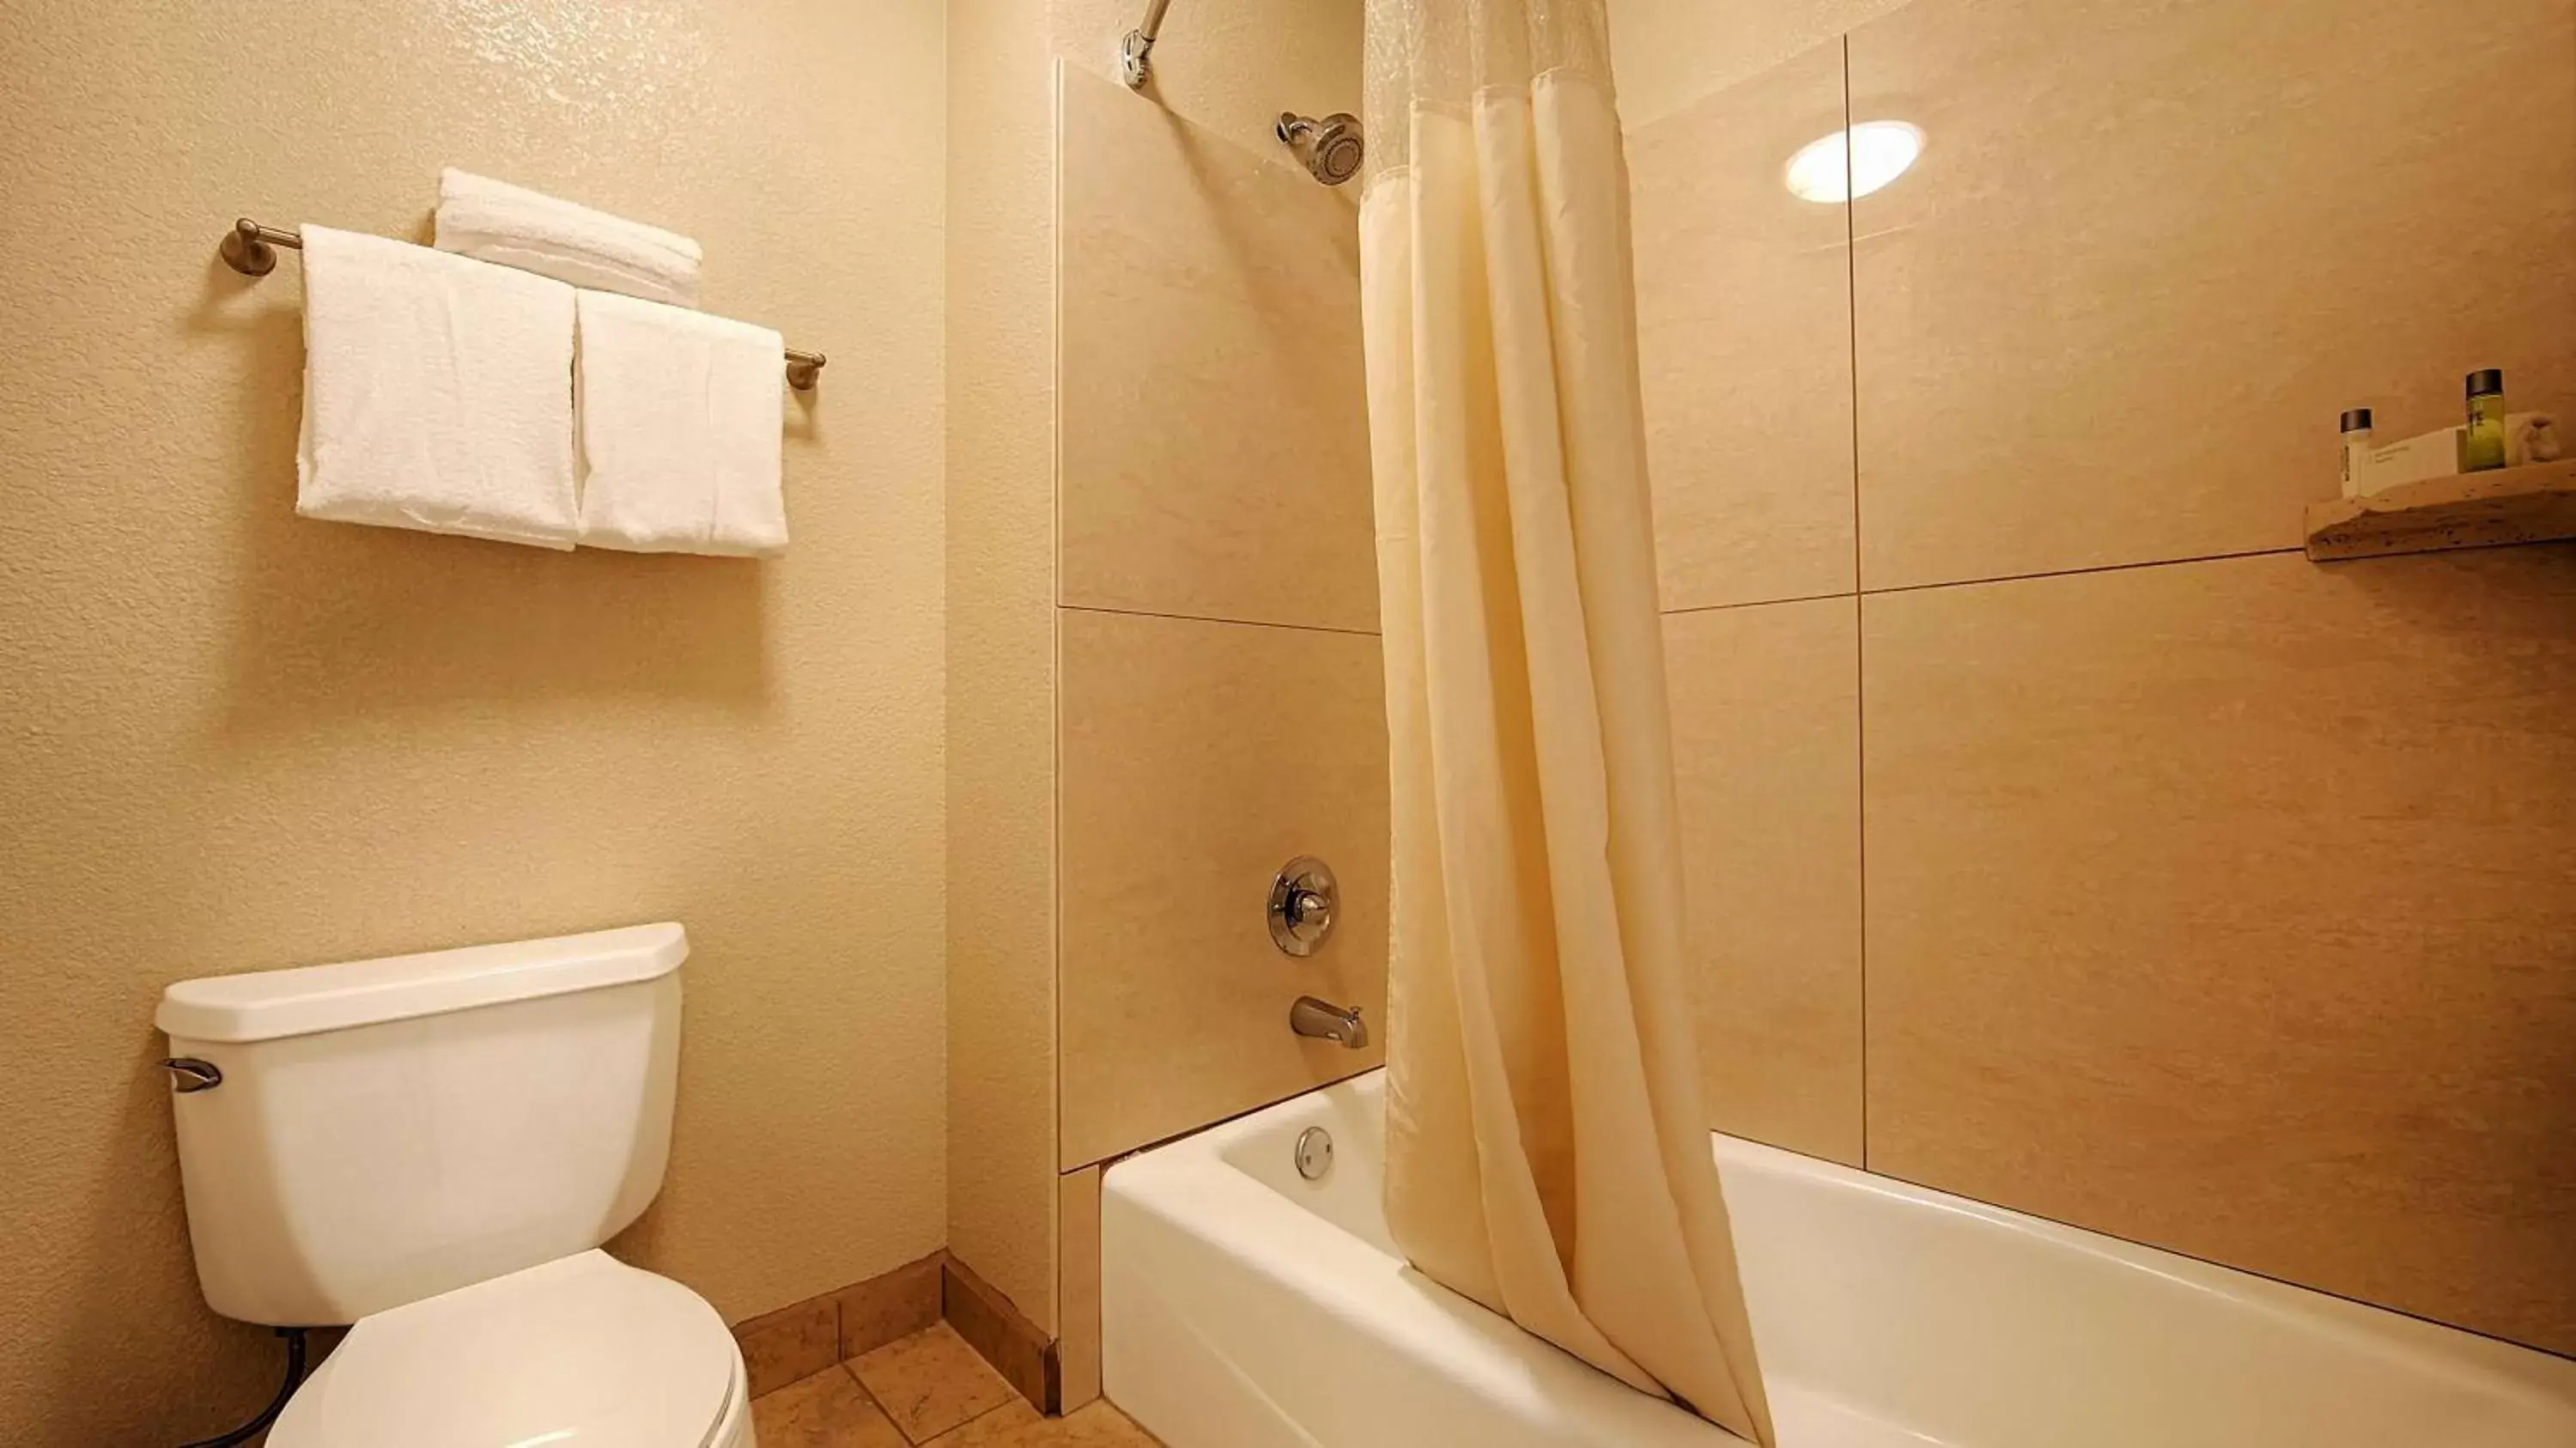 Shower, Bathroom in Best Western Plus Executive Inn & Suites